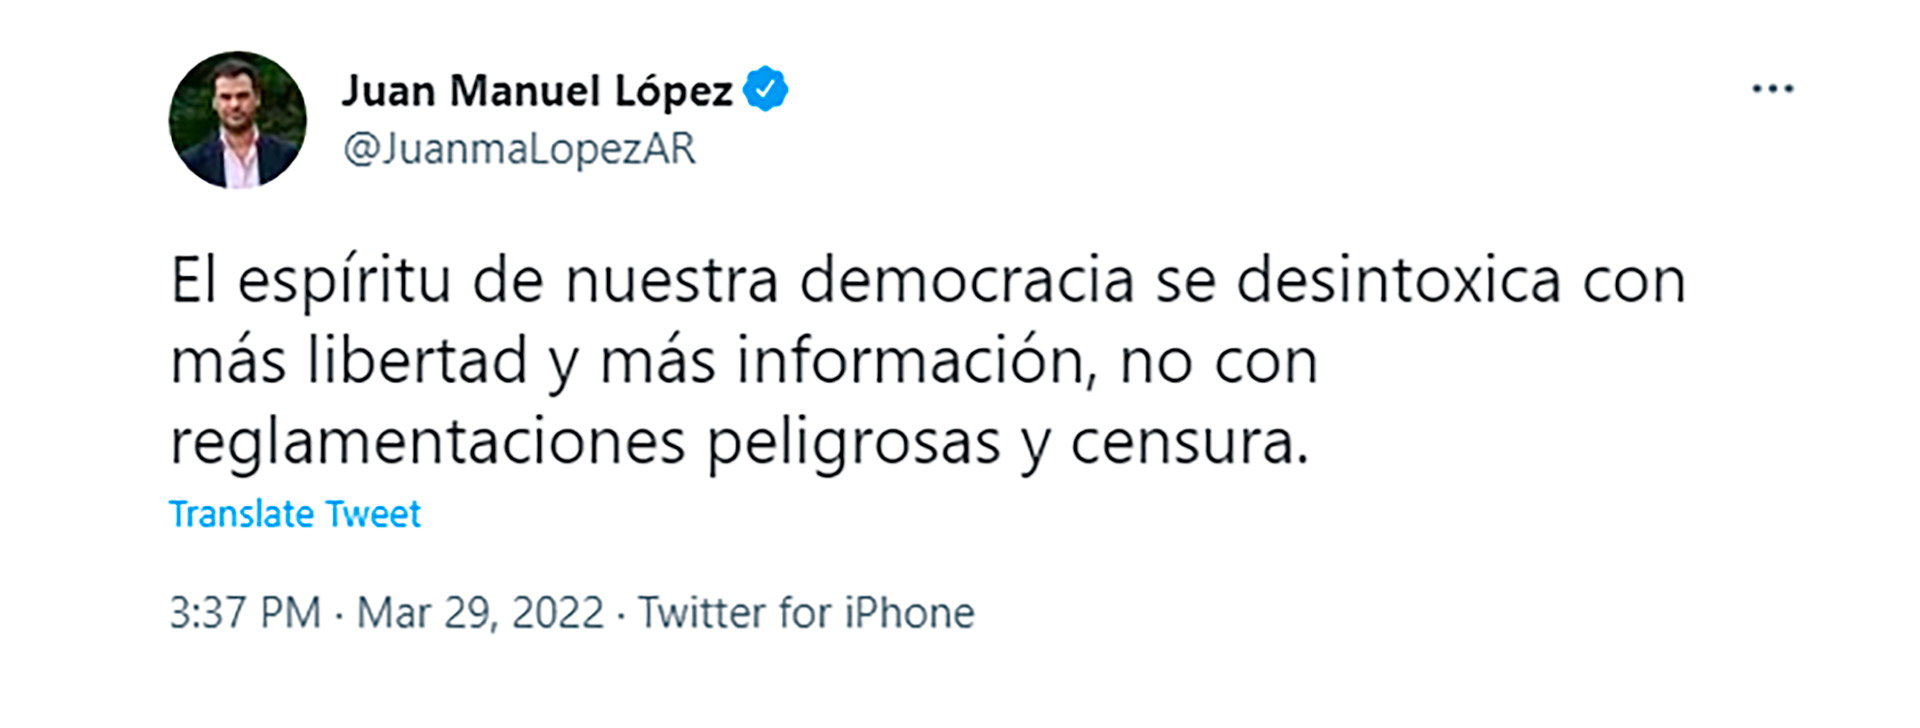 Juan Manuel López, de la Coalición Cívica, también se expresó en contra de regular las redes sociales